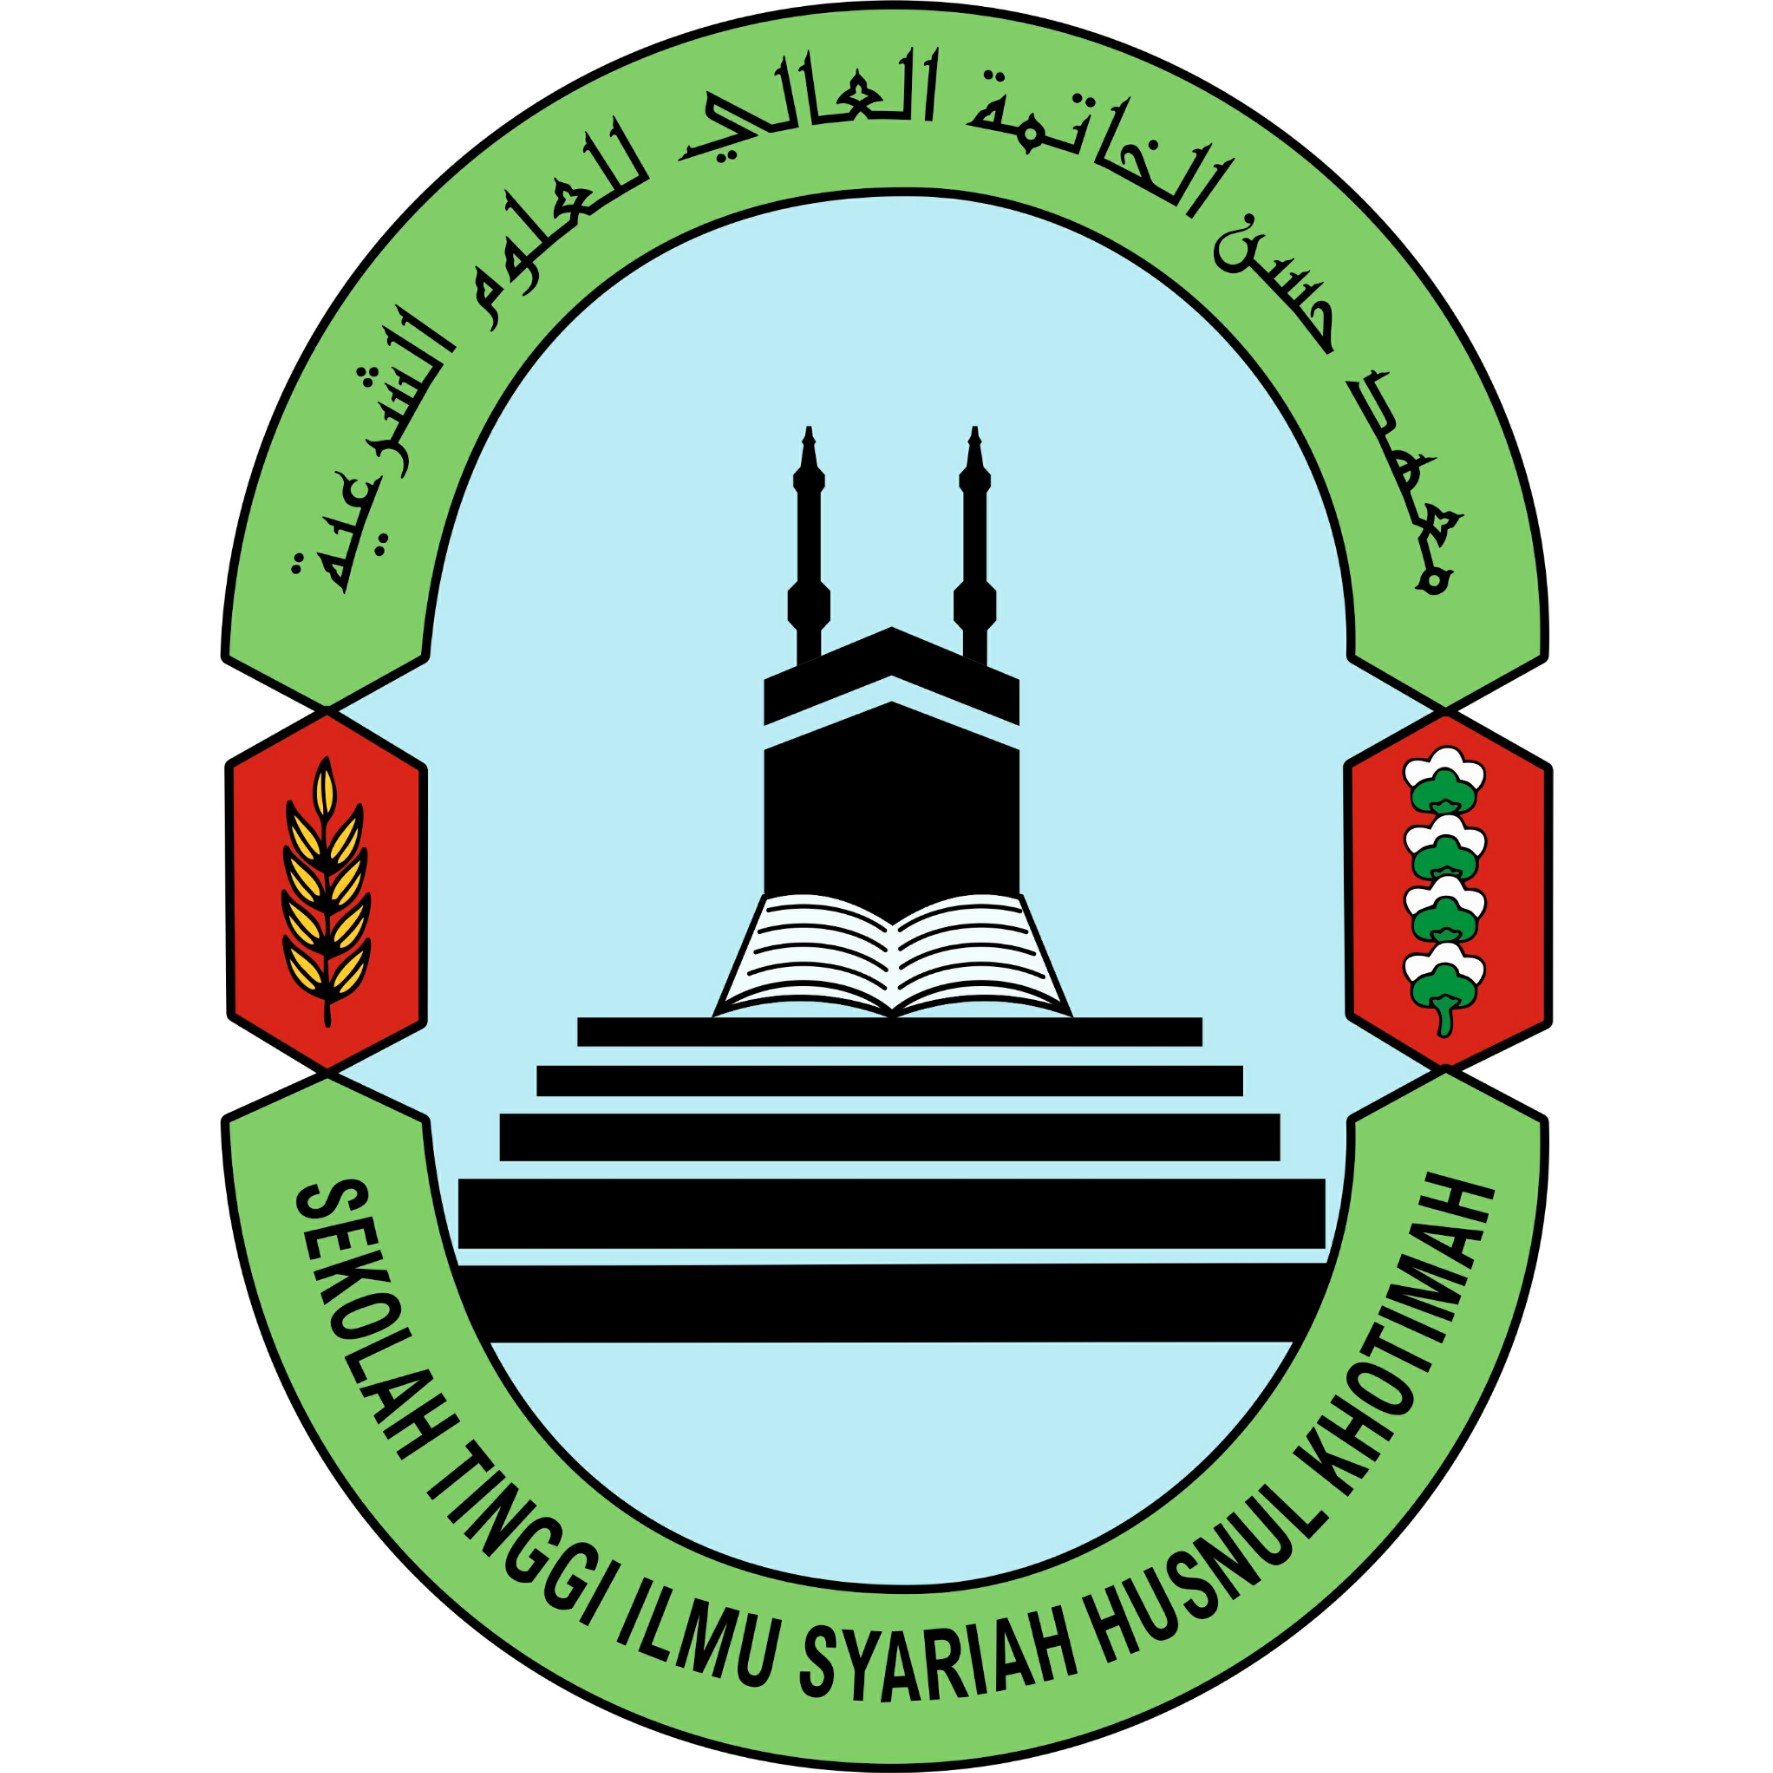 Sekolah Tinggi Ilmu Syariah Husnul Khotimah Kuningan